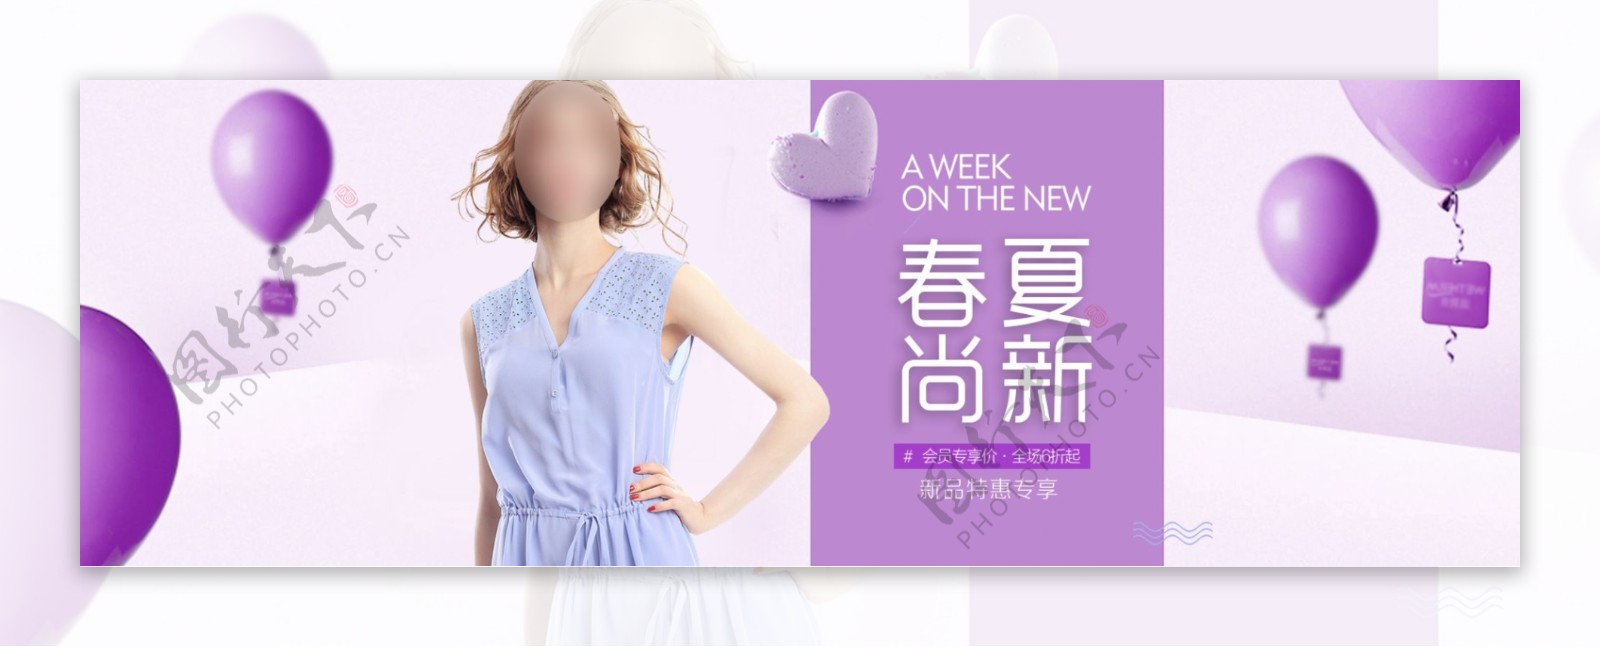 紫色气球春夏尚新特惠专享女装淘宝电商海报